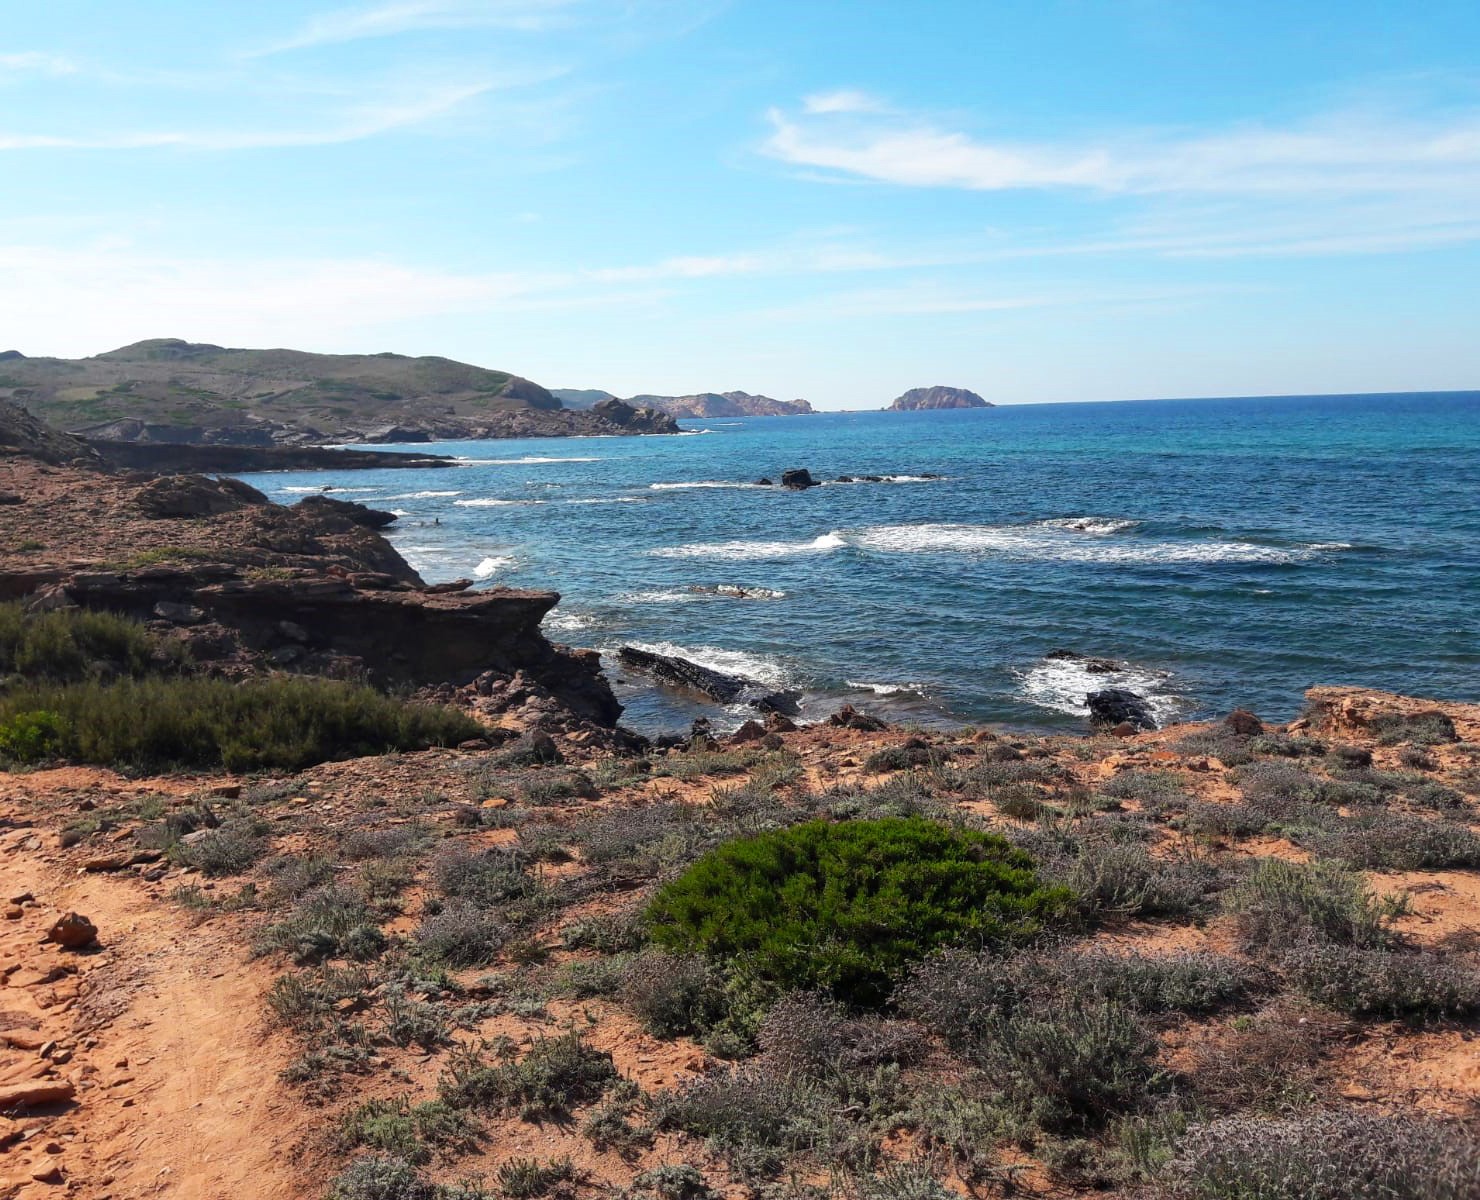 Coastal views from the south coast in Menorca